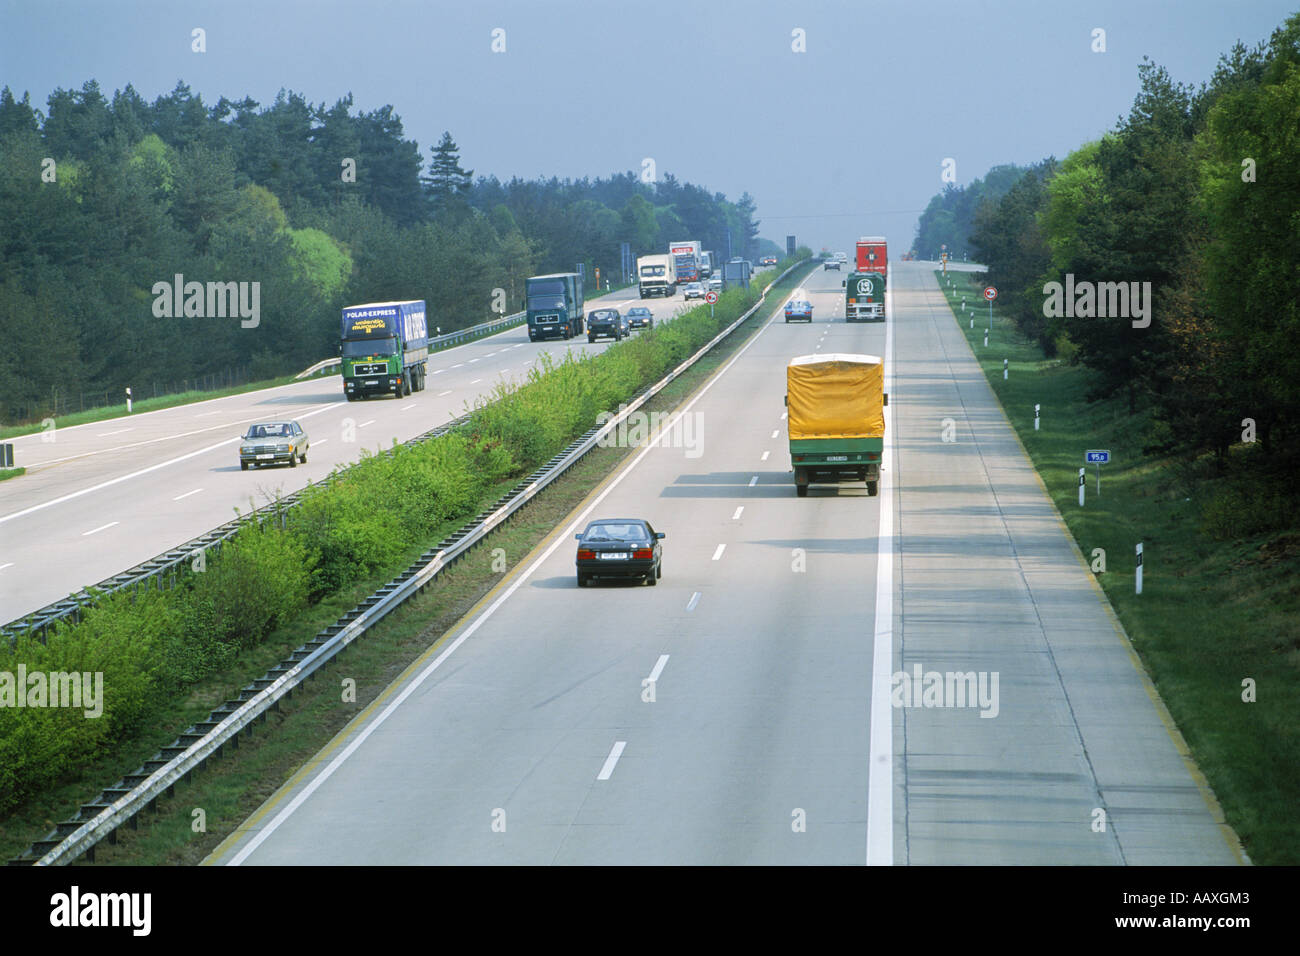 Traffic on German autobahn Stock Photo